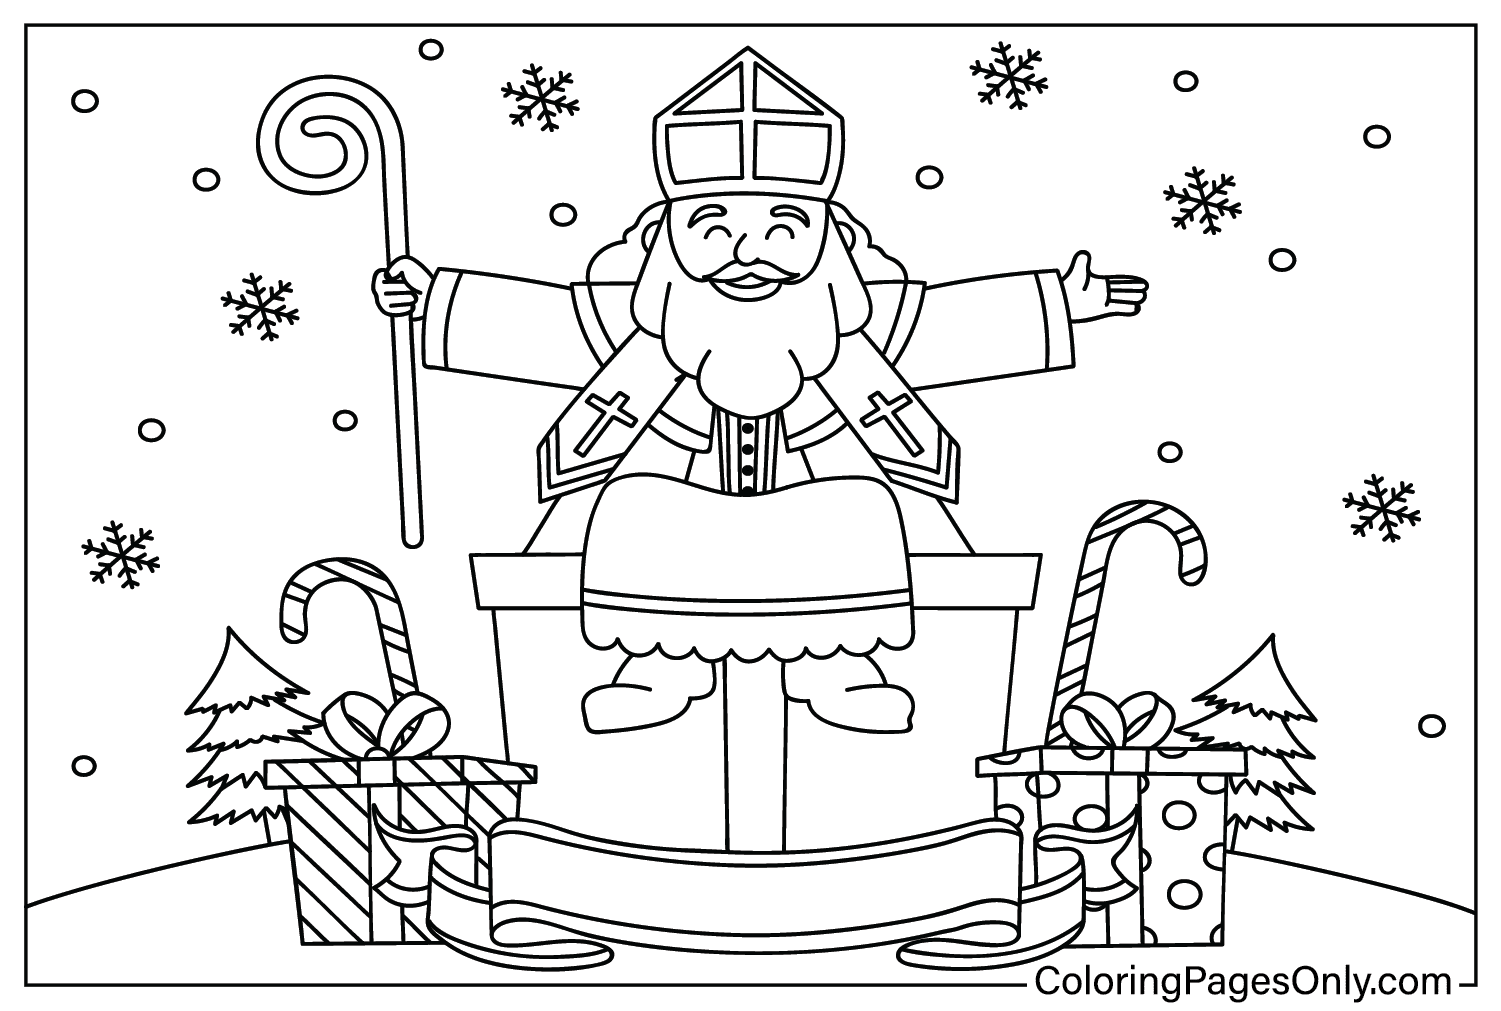 Pagina da colorare San Nicola dal giorno di San Nicola